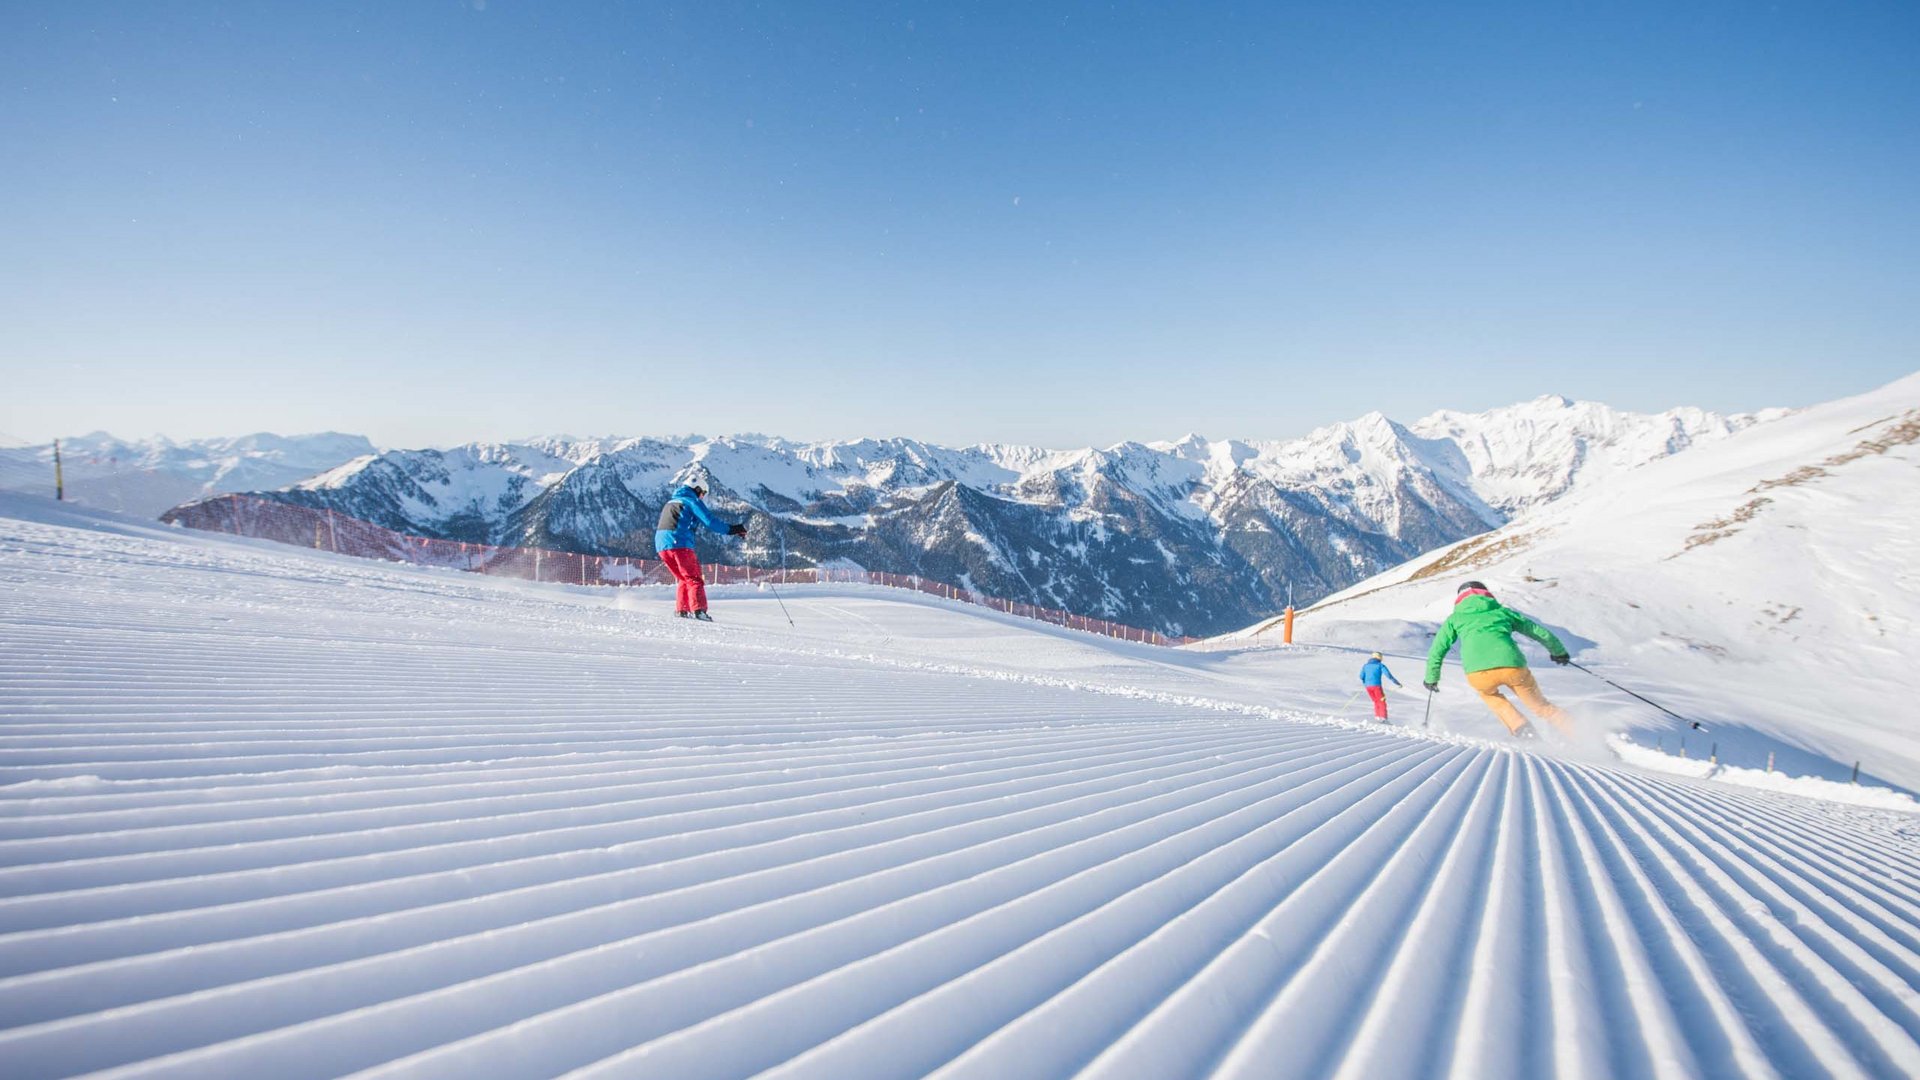 Ski resort Plan de Corones/Kronplatz in the Alps, Italy